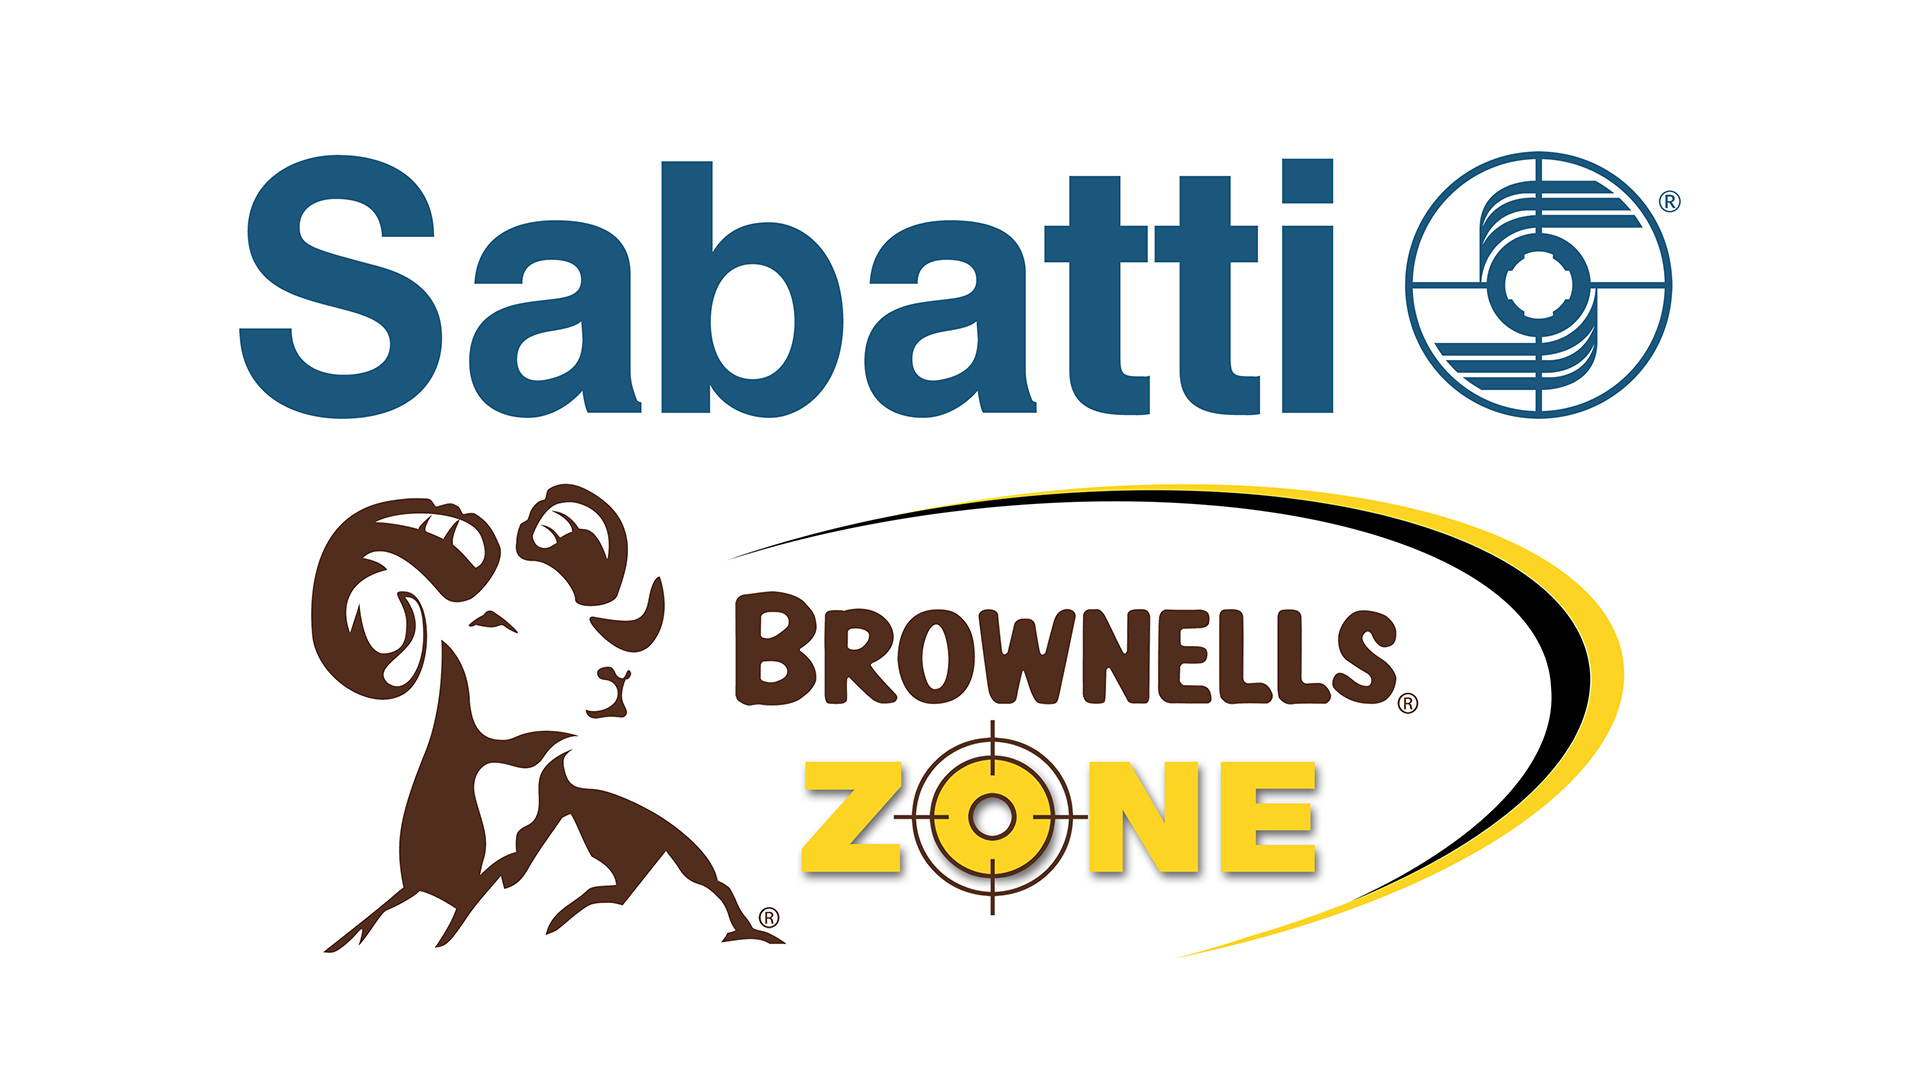 Sabatti e Brownells Italia, con un comunicato congiunto, annunciano l'inizio di una collaborazione che porter alla creazione del primo 